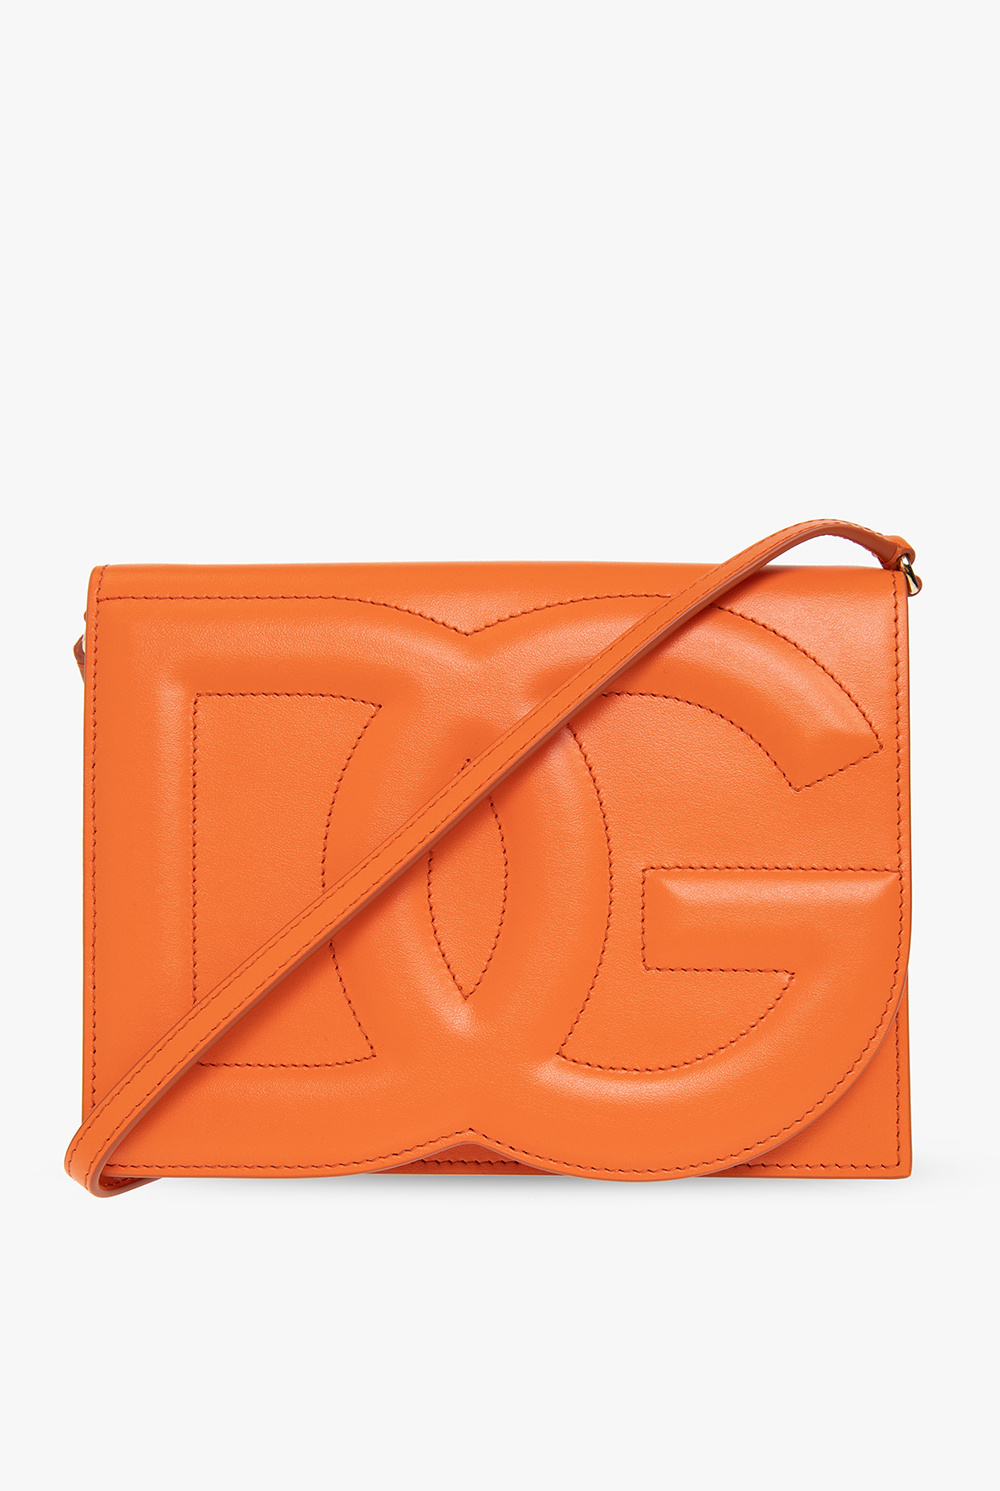 Dolce & Gabbana Leather shoulder bag with logo